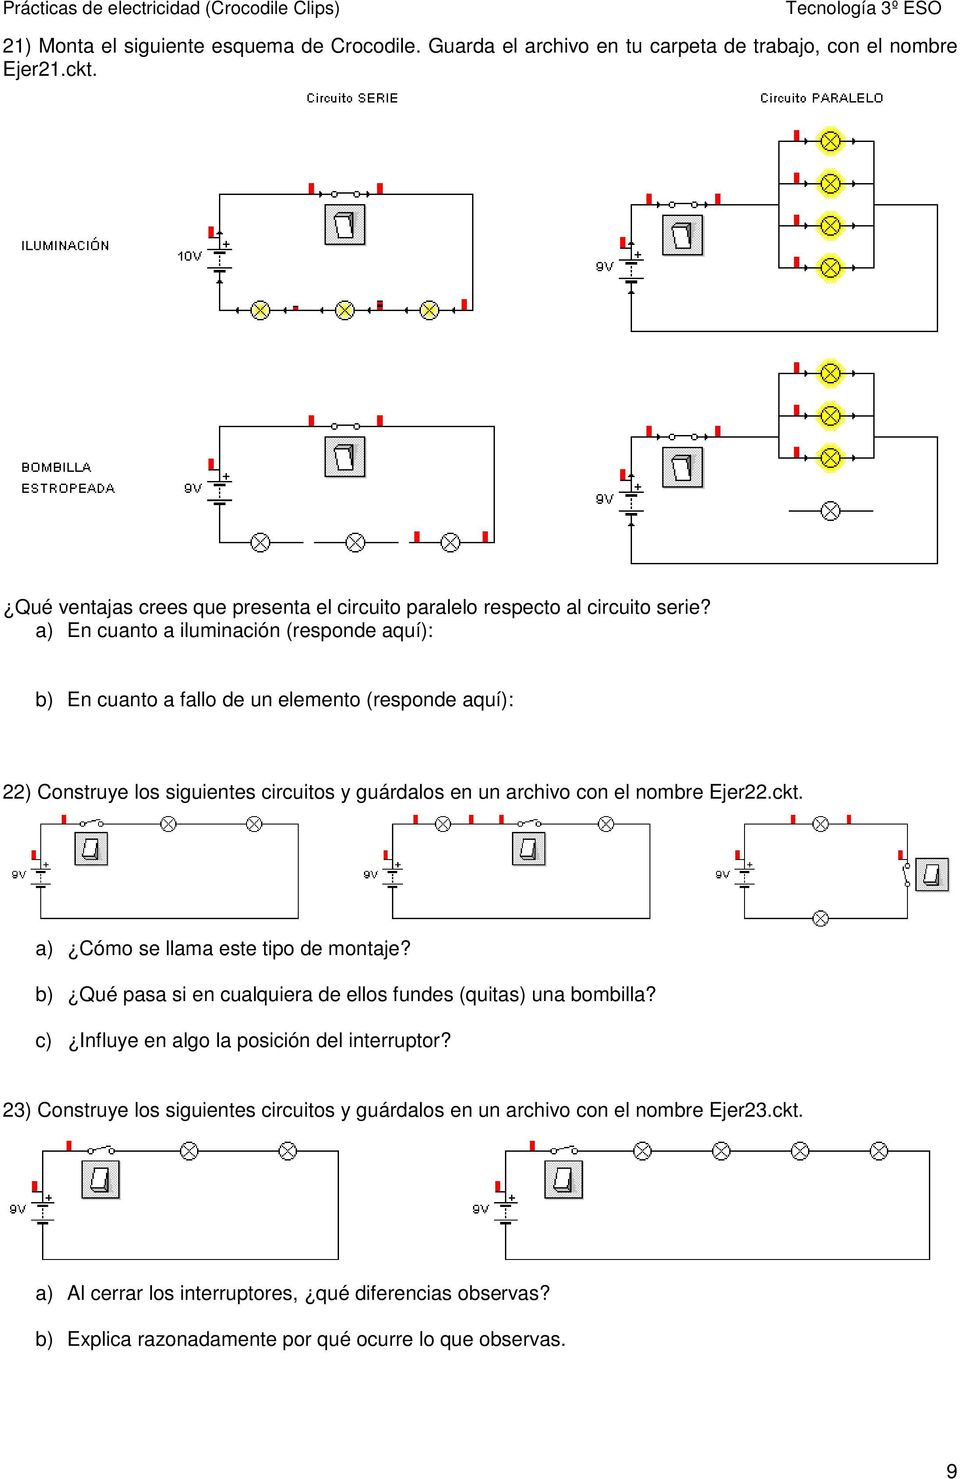 a) En cuanto a iluminación (responde aquí): b) En cuanto a fallo de un elemento (responde aquí): 22) Construye los siguientes circuitos y guárdalos en un archivo con el nombre Ejer22.ckt.